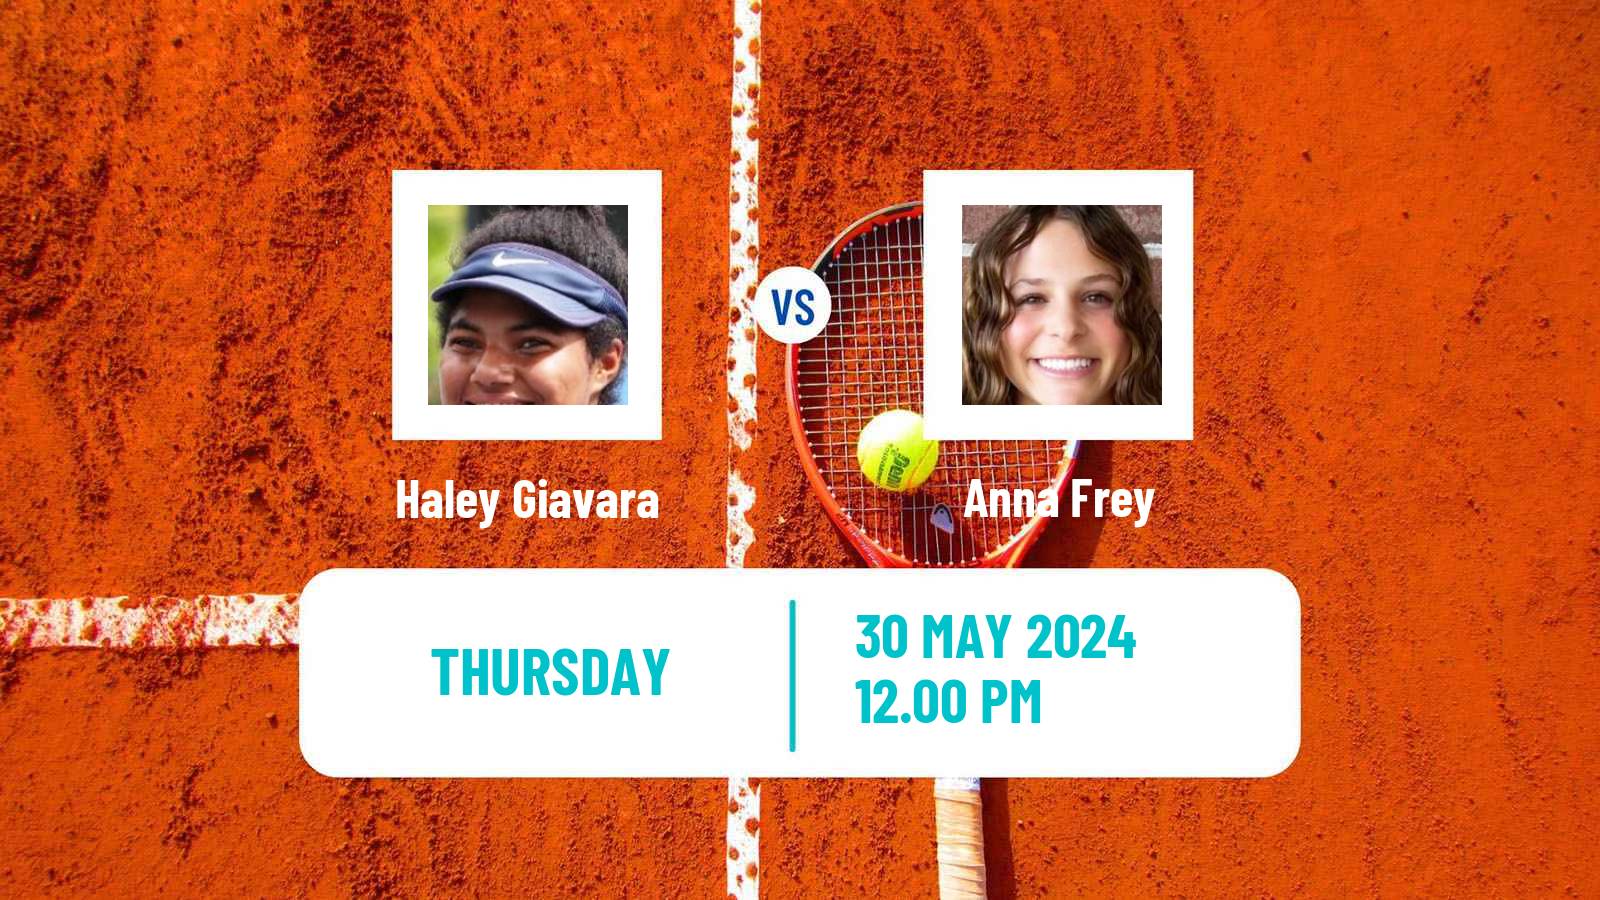 Tennis ITF W15 San Diego Ca Women Haley Giavara - Anna Frey